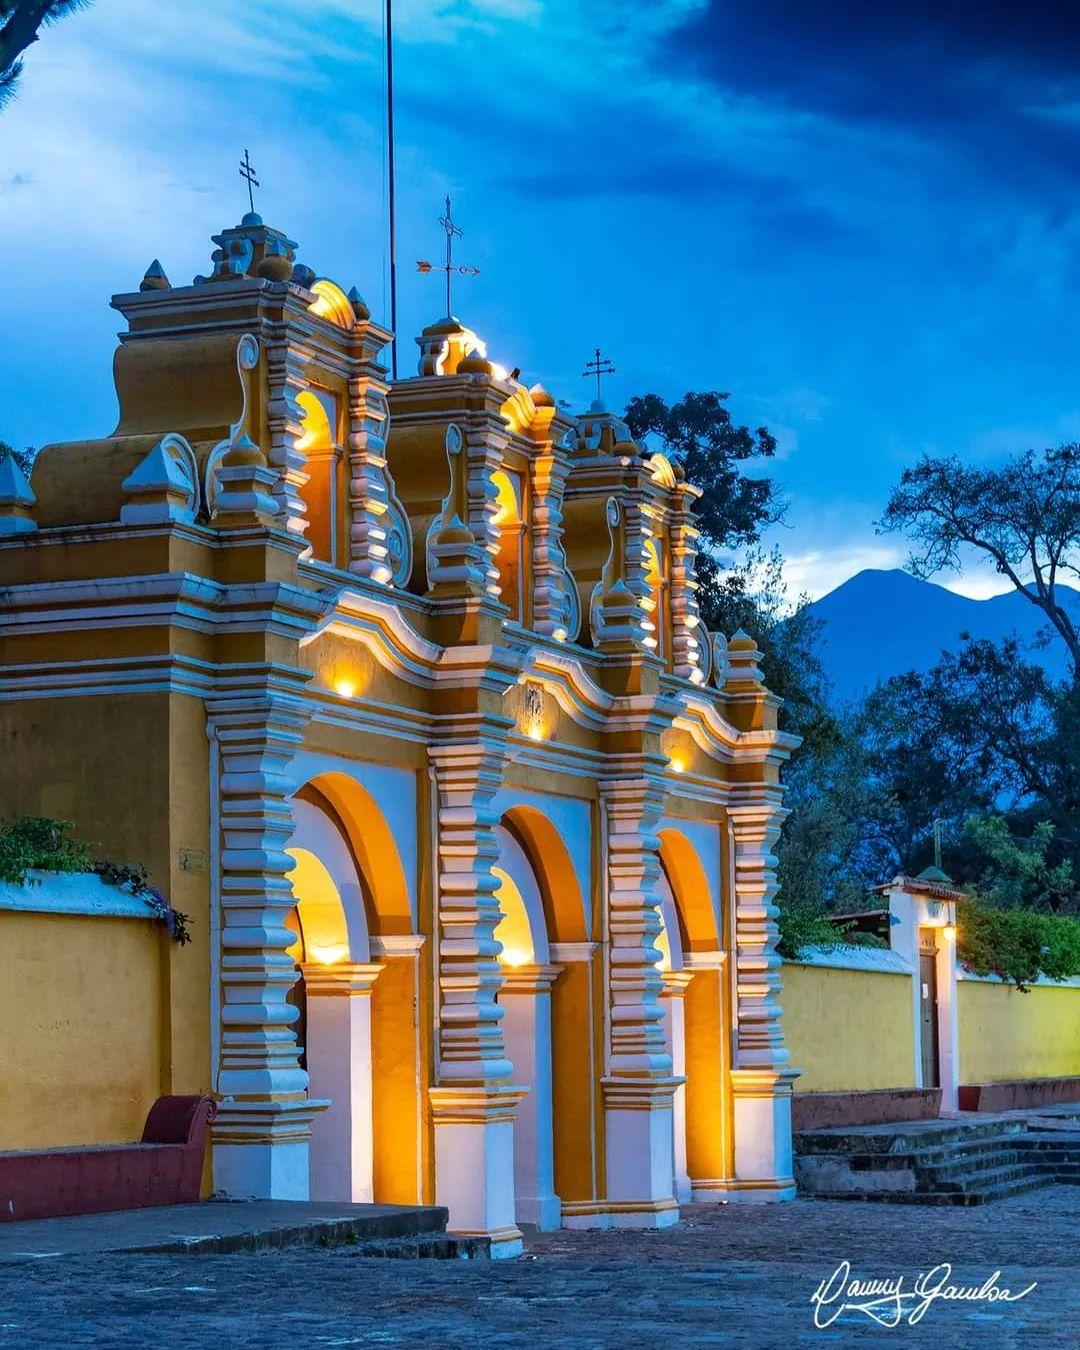 class="content__text"
 #📷 @dannygamboagt
Cómo no enamorarse de esta mágica ciudad.
El Calvario, Antigua Guatemala.

————— 
Comparte con nosotros tus publicaciones en instagram con el HT: #MundoChapin o #MundoChapinCom

 #Guatemala 
 